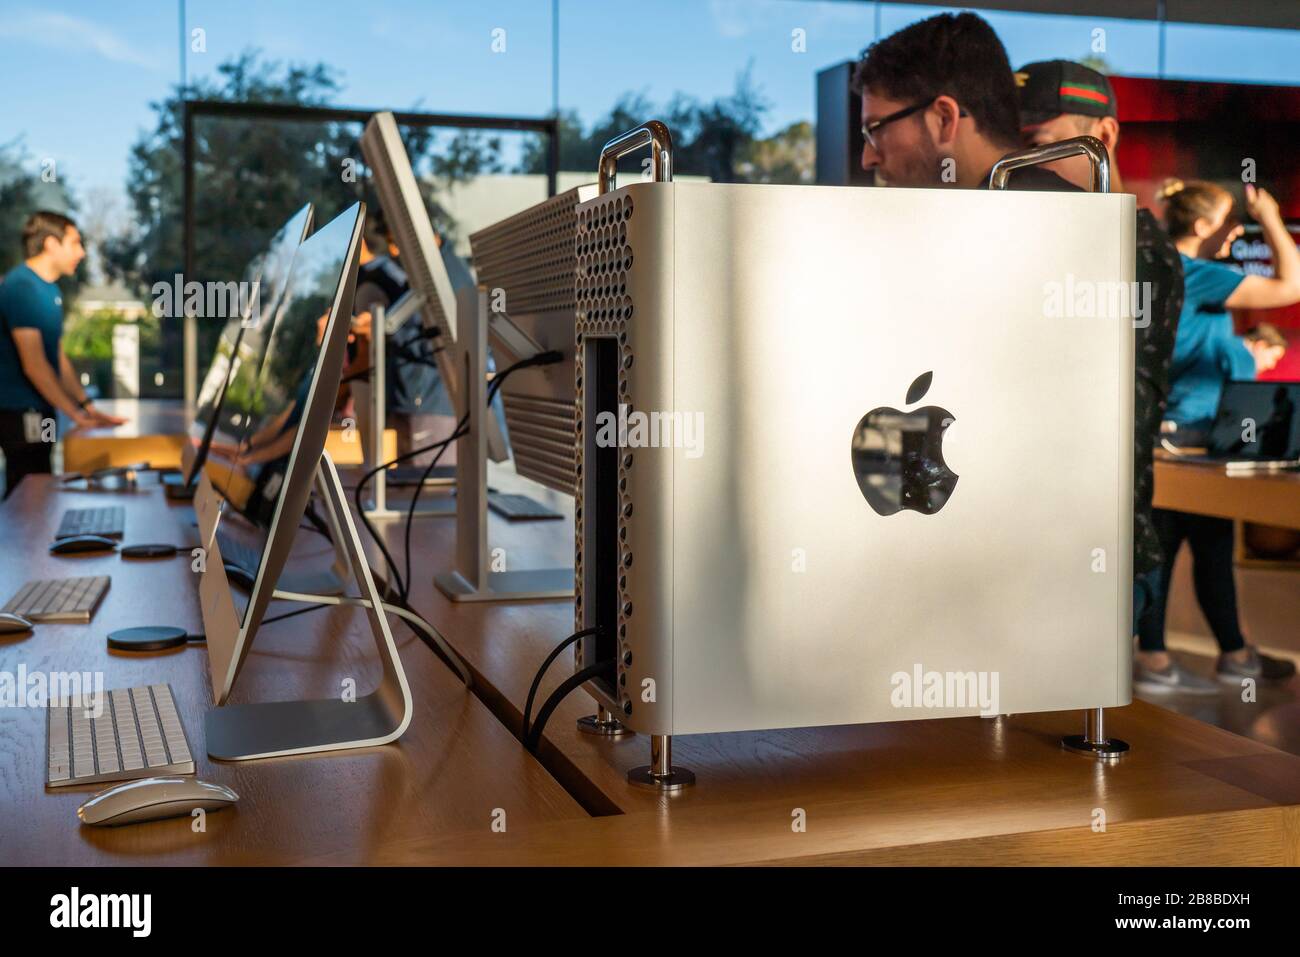 Computer Mac Pro e iMac esposti presso l'Apple Park Visitor Center di Cupertino. Foto Stock